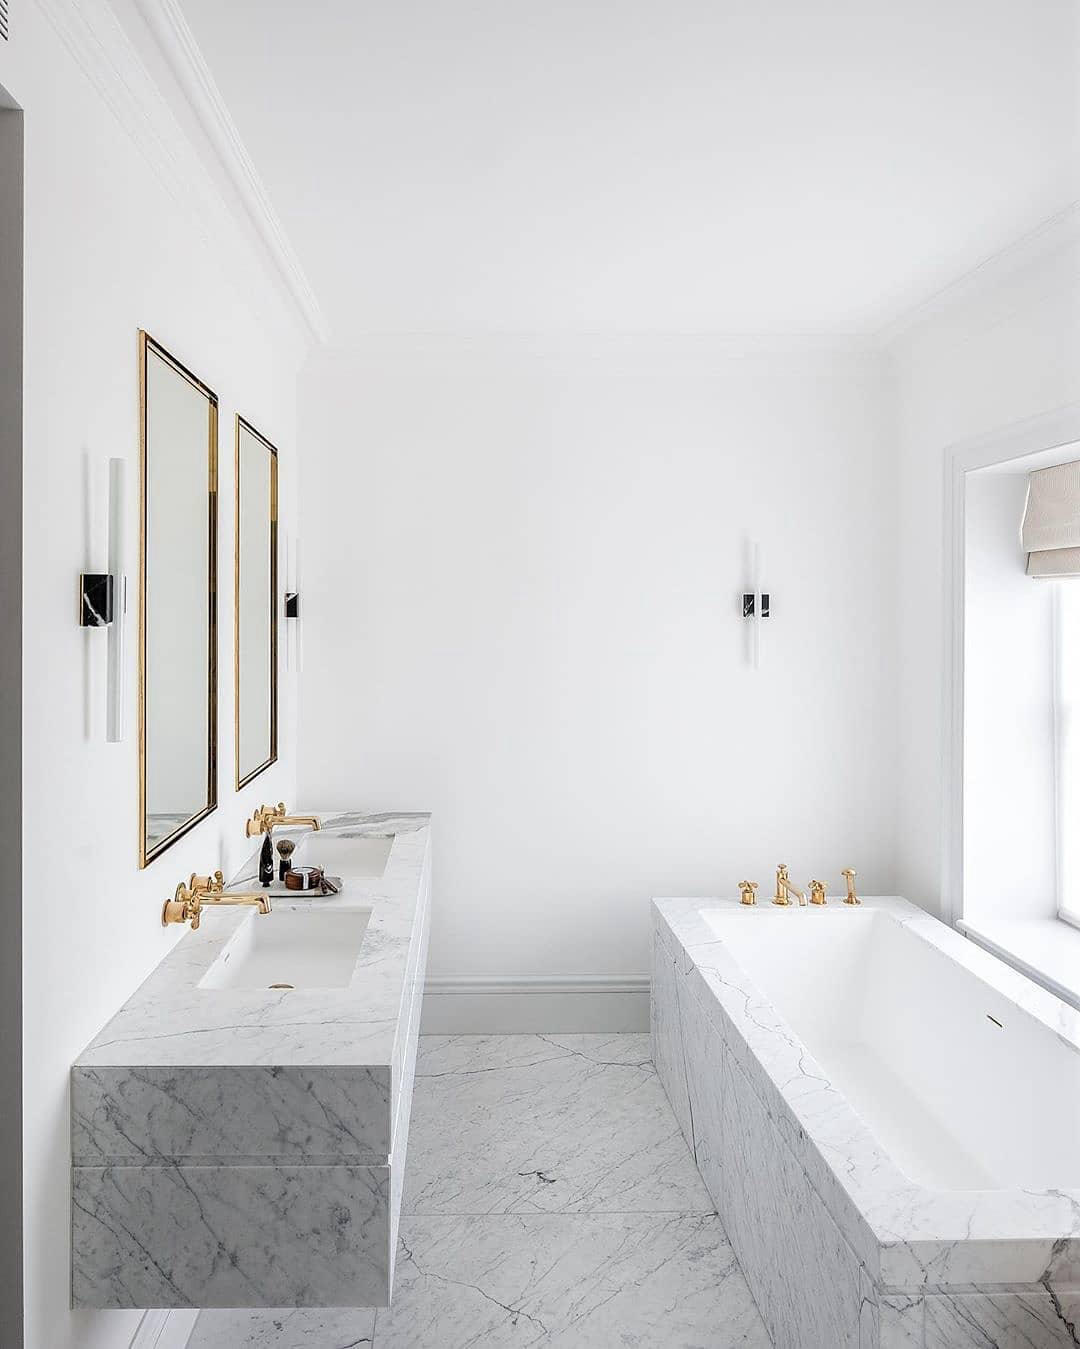 Interior Design District - Rate this #luxury bathroom 1-10